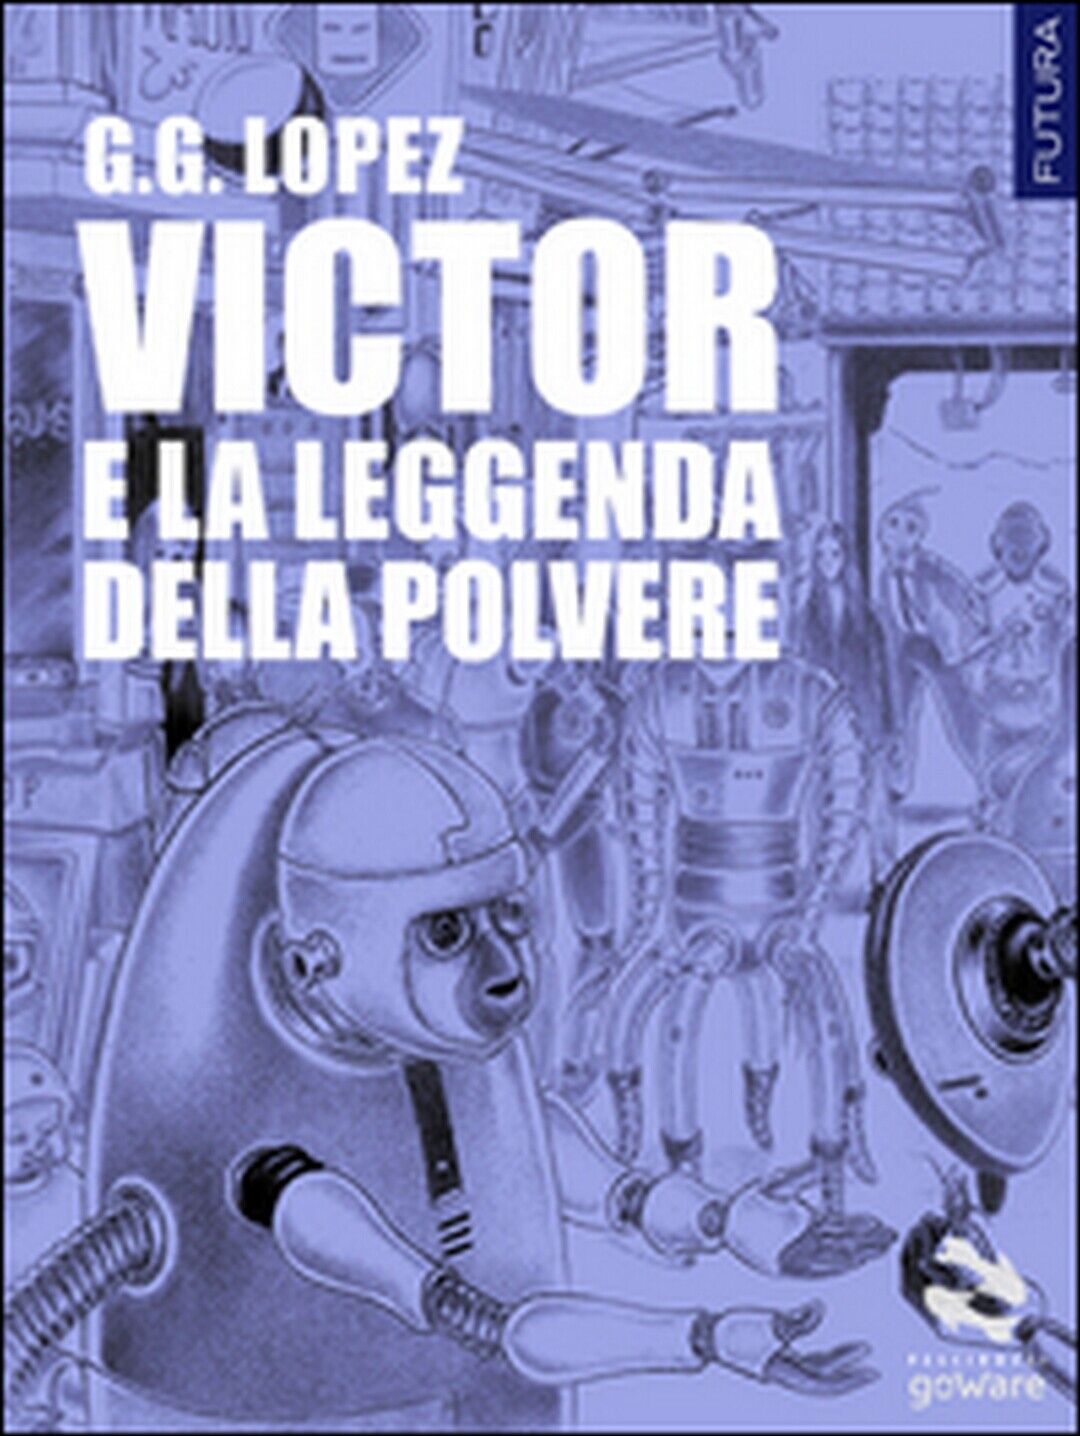 Victor e la leggenda della polvere  di G. G. Lopez,  2016,  Goware libro usato